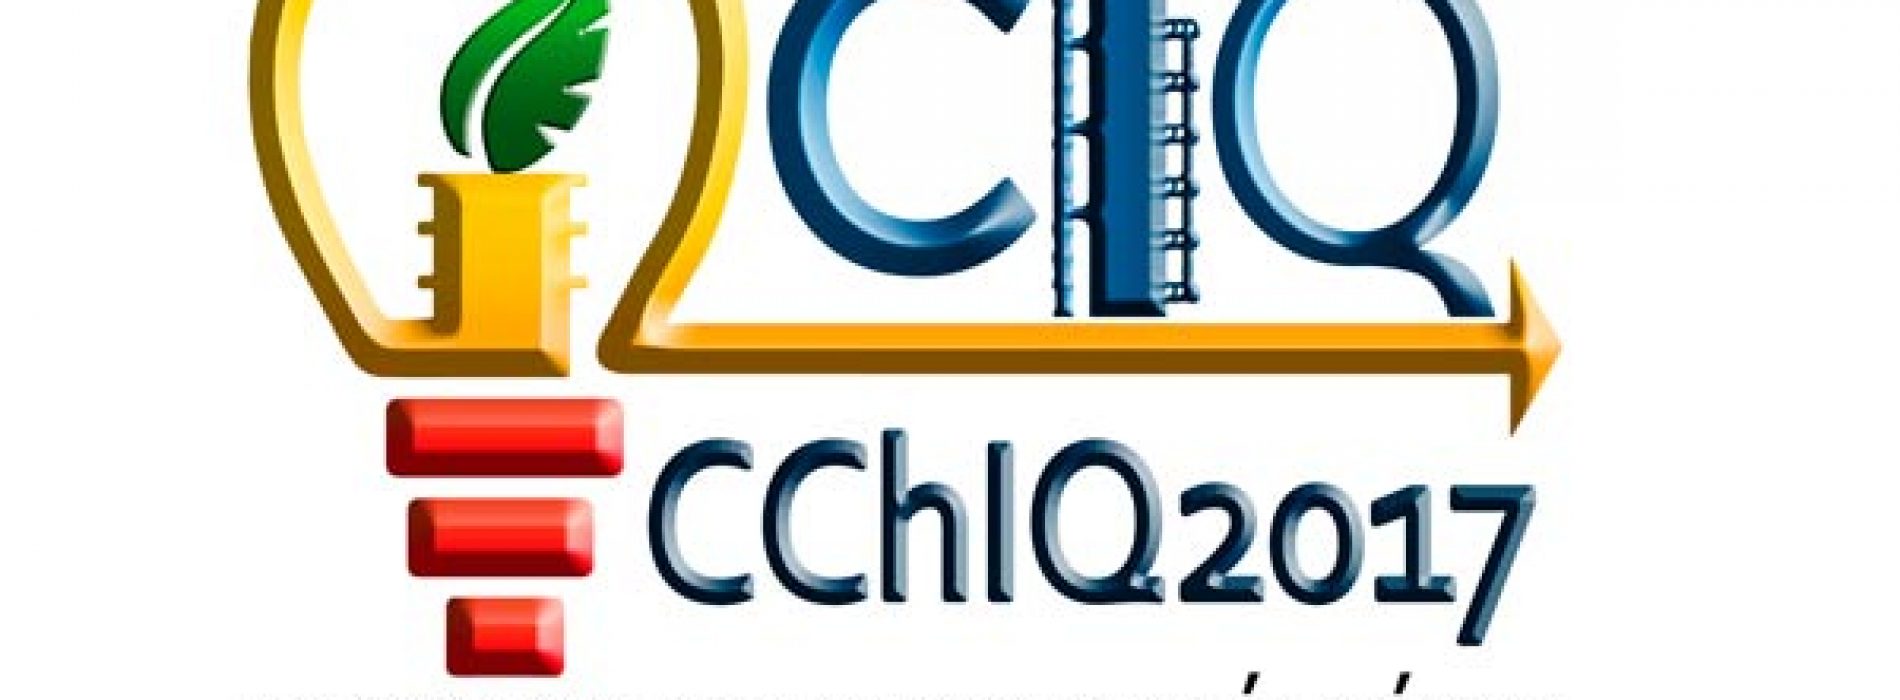 XX Congreso Chileno de Ingeniería Química